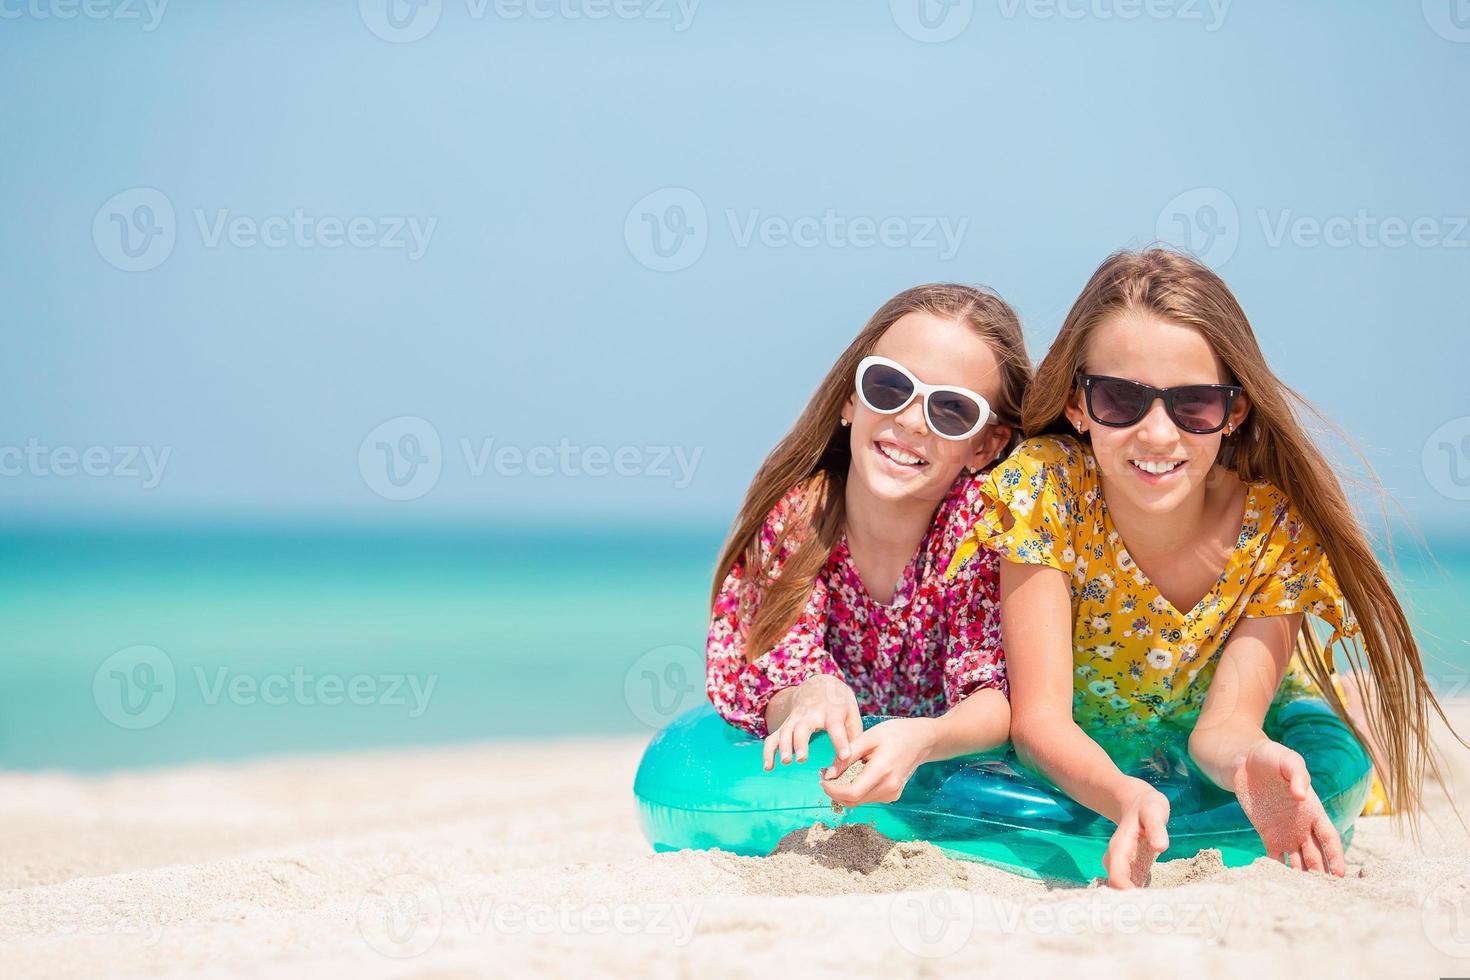 adorables petites filles pendant les vacances d'été s'amusent ensemble photo